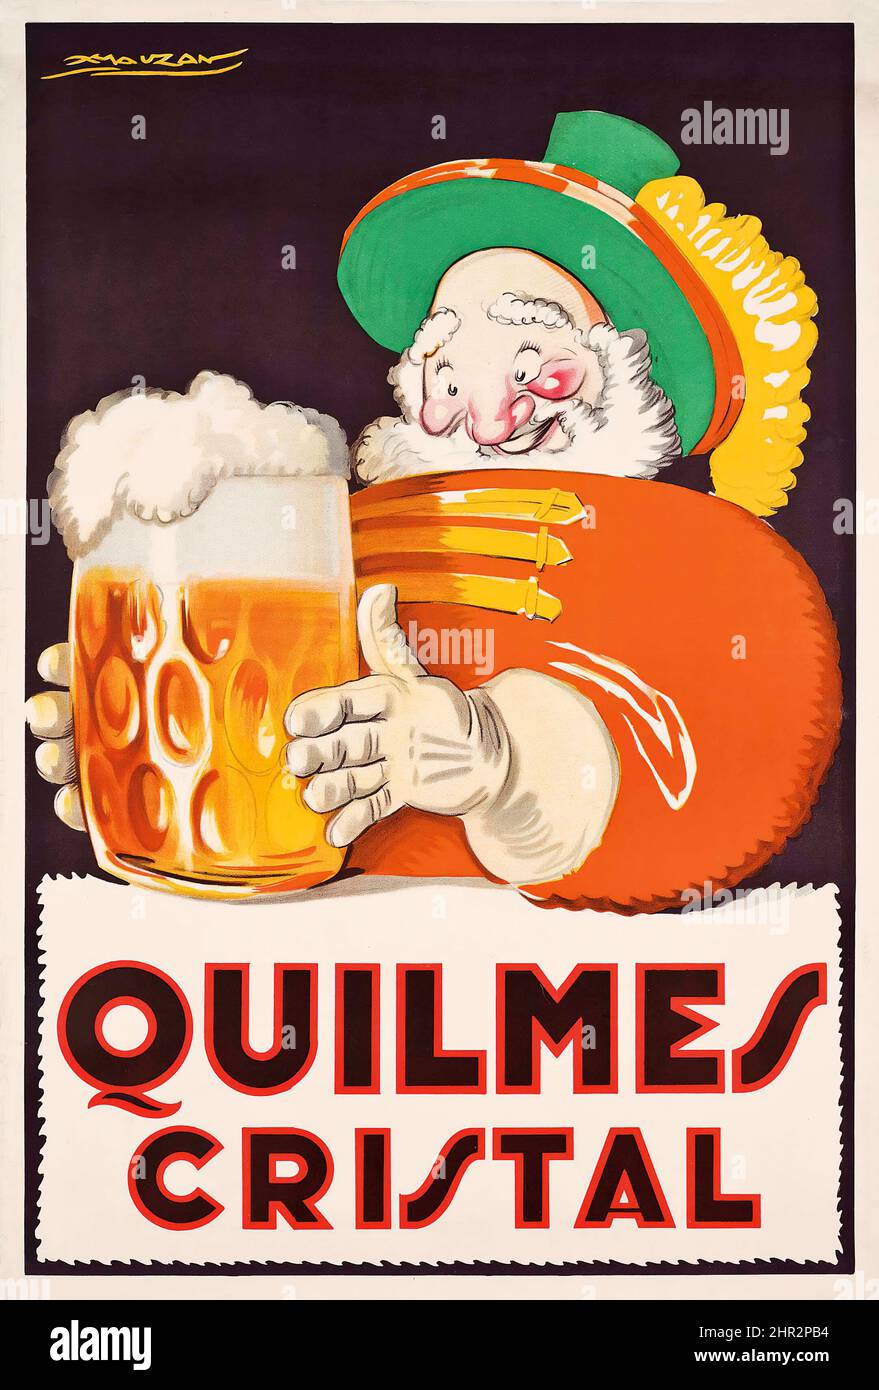 Achille L. Mauzan (1883-1952) QUILMES CRISTAL - vintage advertisement poster, 1930. Stock Photo